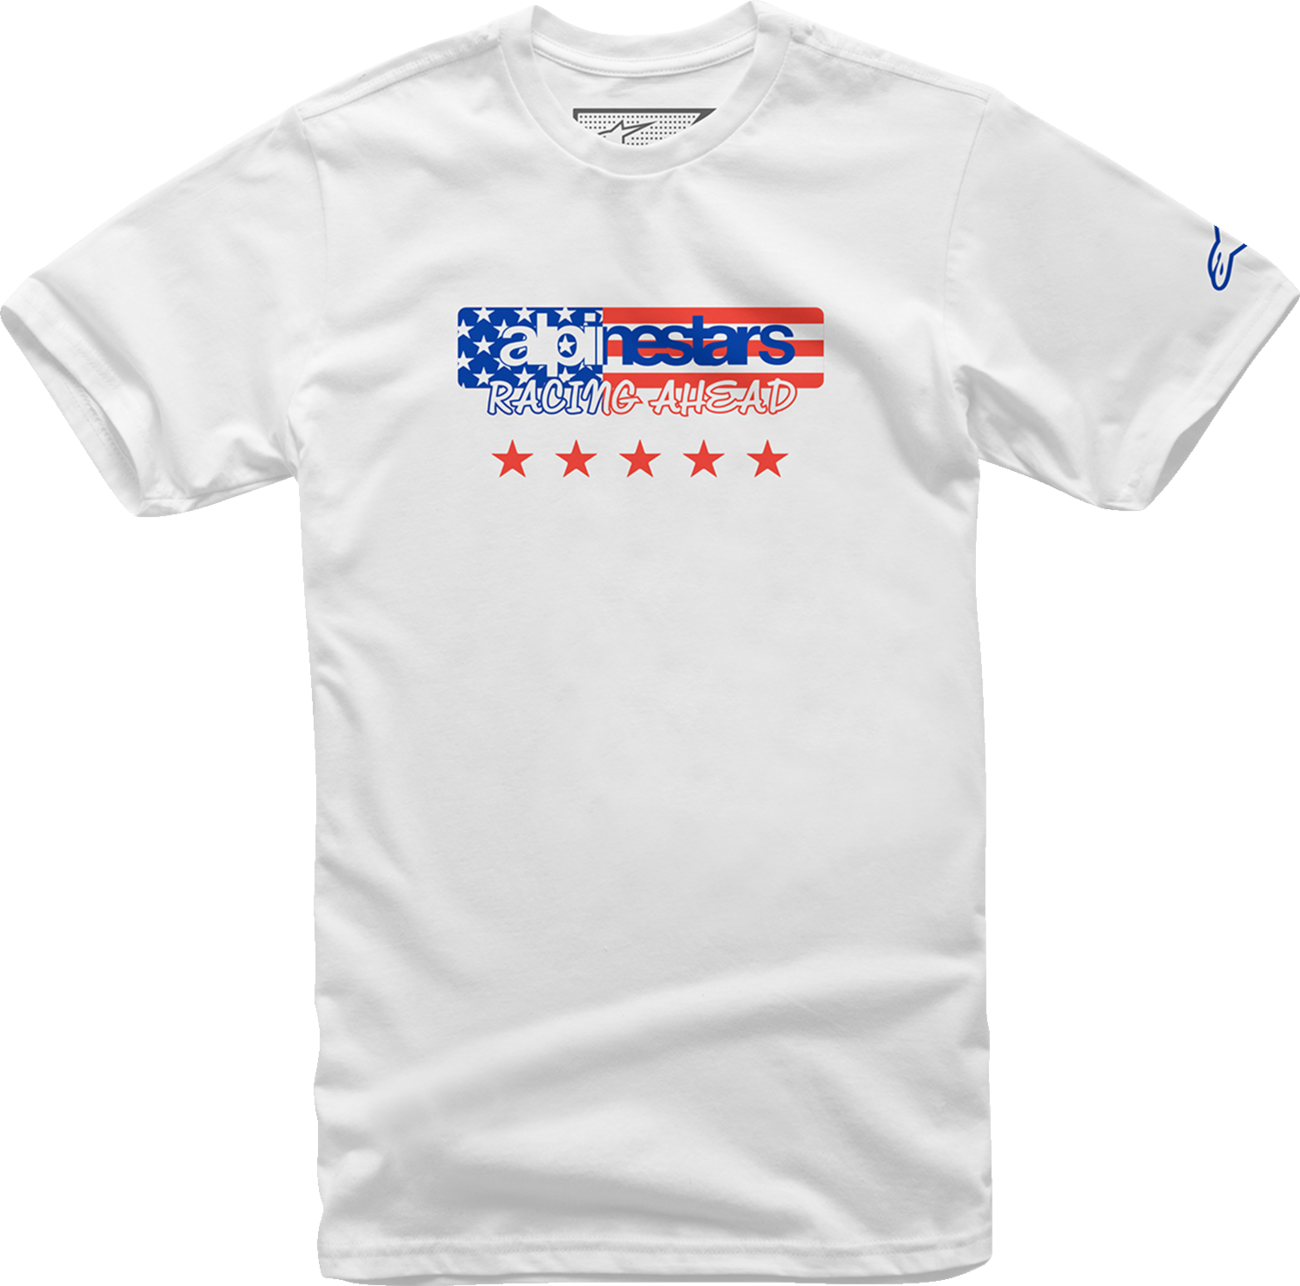 ALPINESTARS USA Again T-Shirt - White - XL 12137261020XL